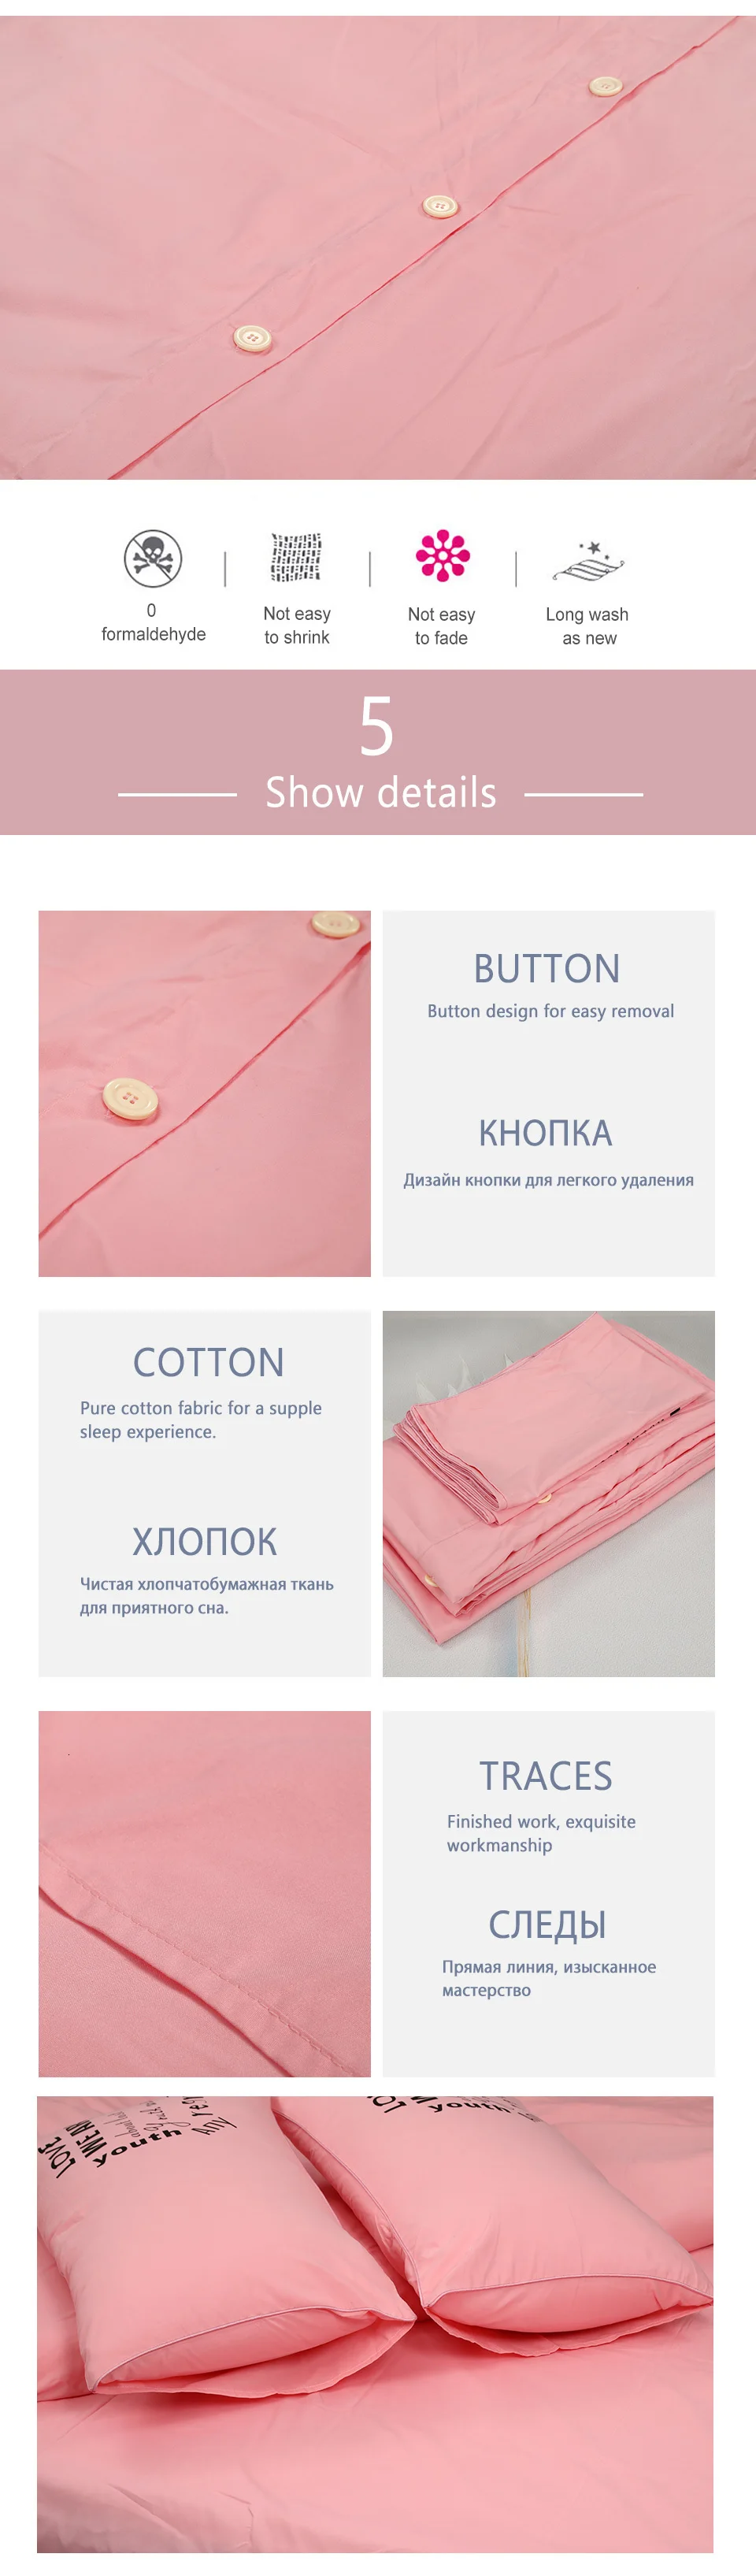 Yimeis, корейский Комплект постельного белья, хлопок, королева, простыня, набор, розовый, роскошный, королева, одеяла, наборы